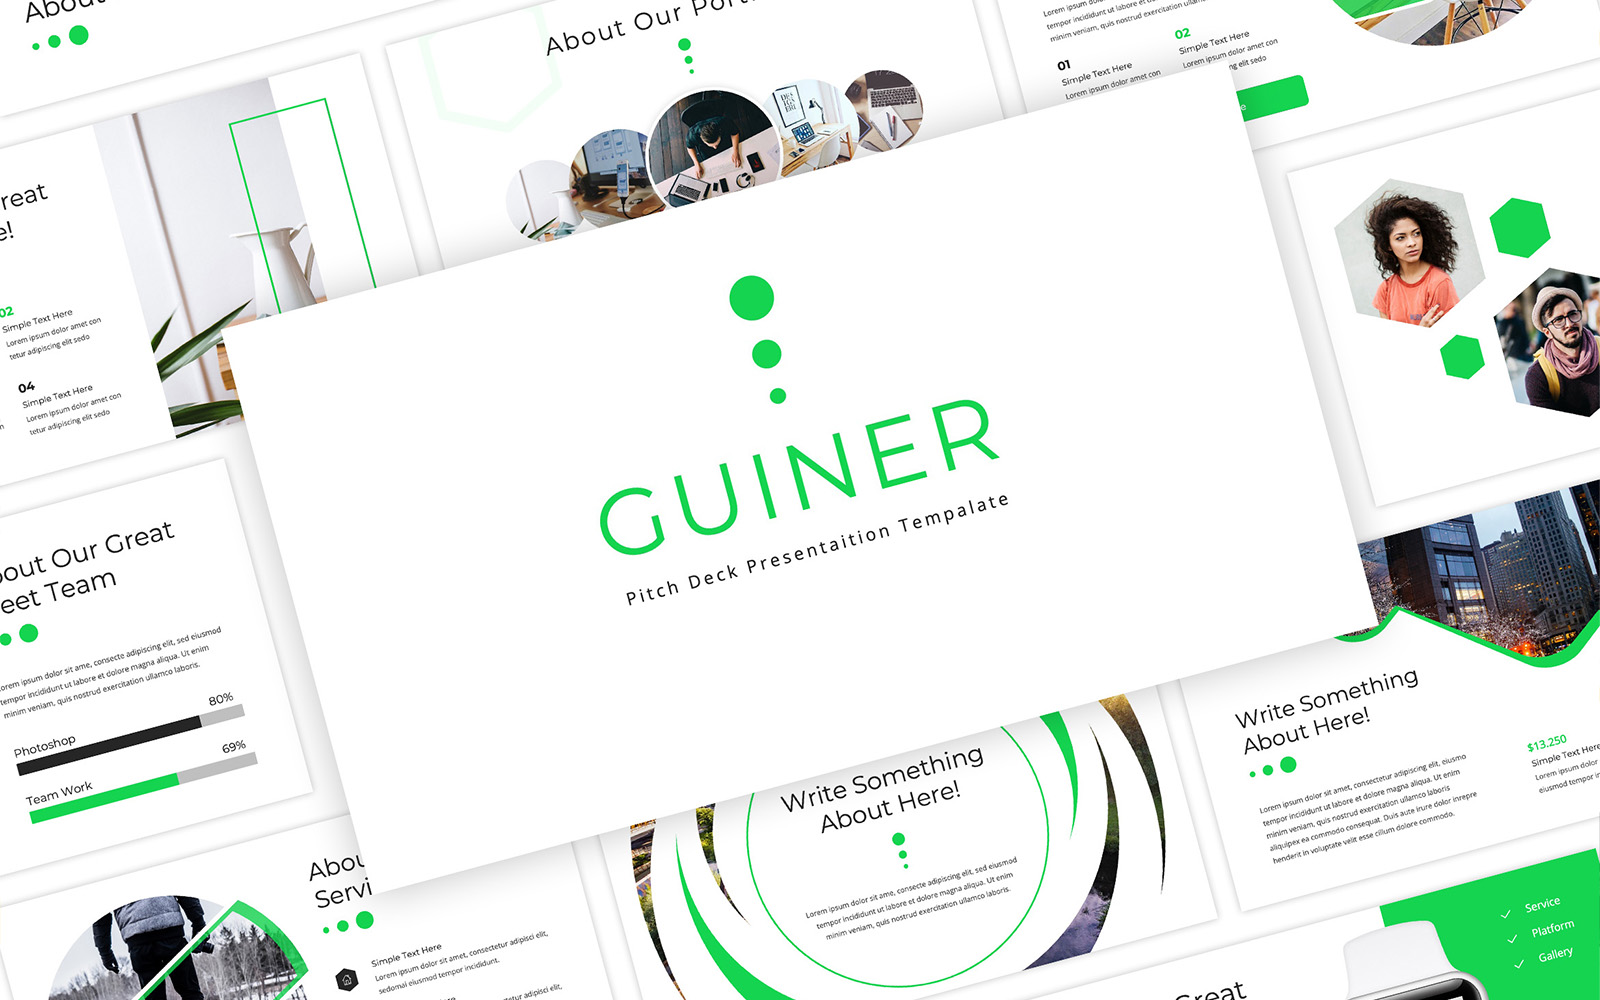 Guiner - Pitch Deck Google Slides